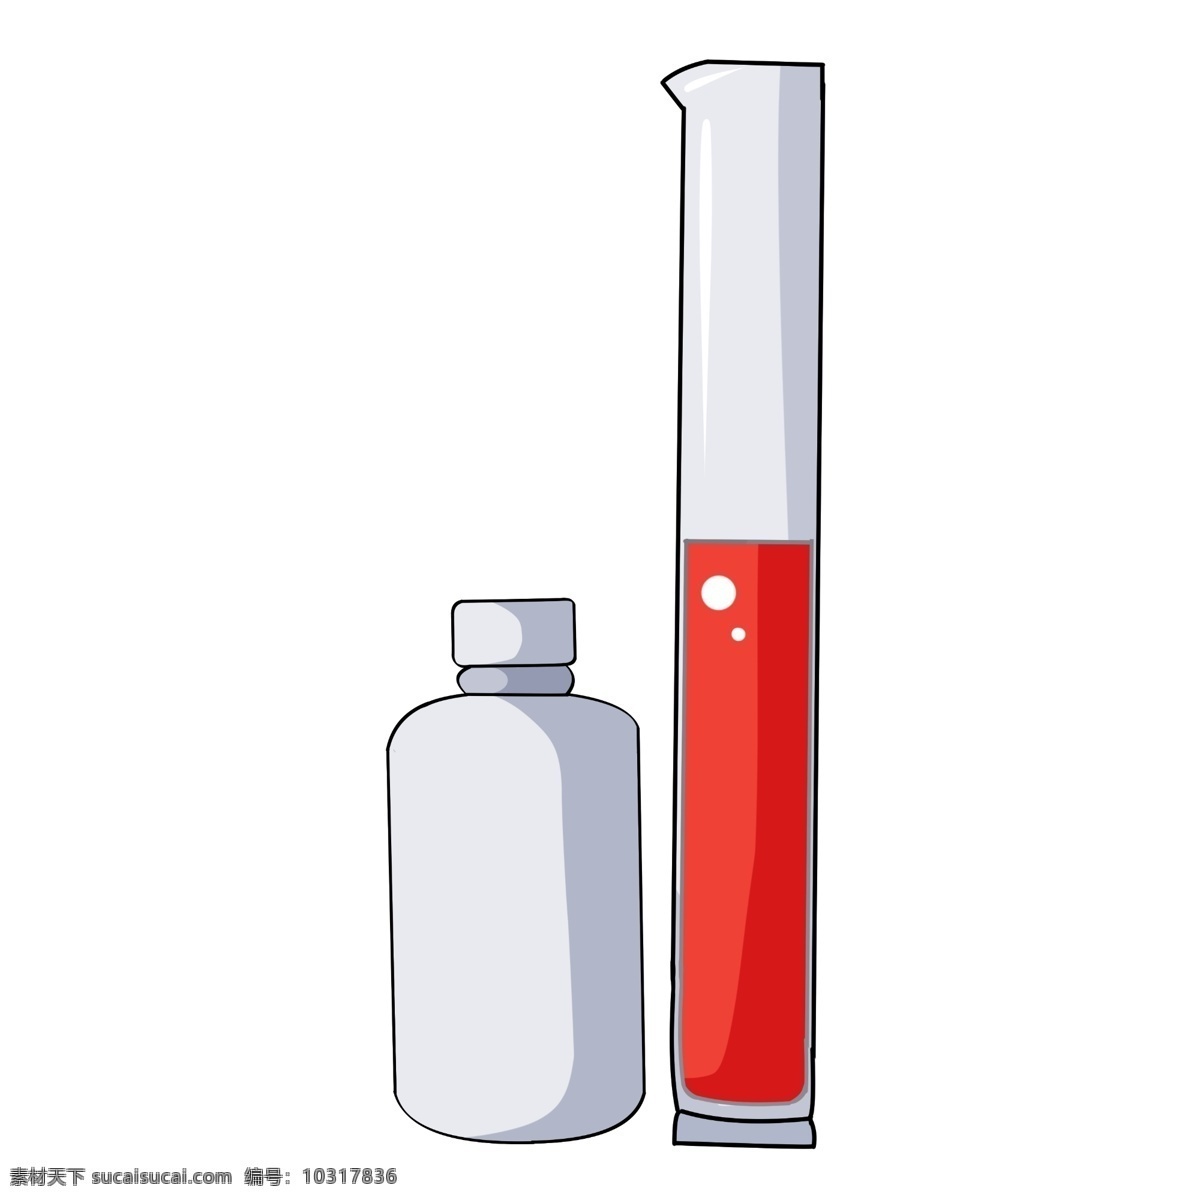 卡通 白色 药瓶 图案 插图 立体试管 红色液体 白色药瓶 蒸发的气泡 化学仪器 化学实验 化学液体 化学器材